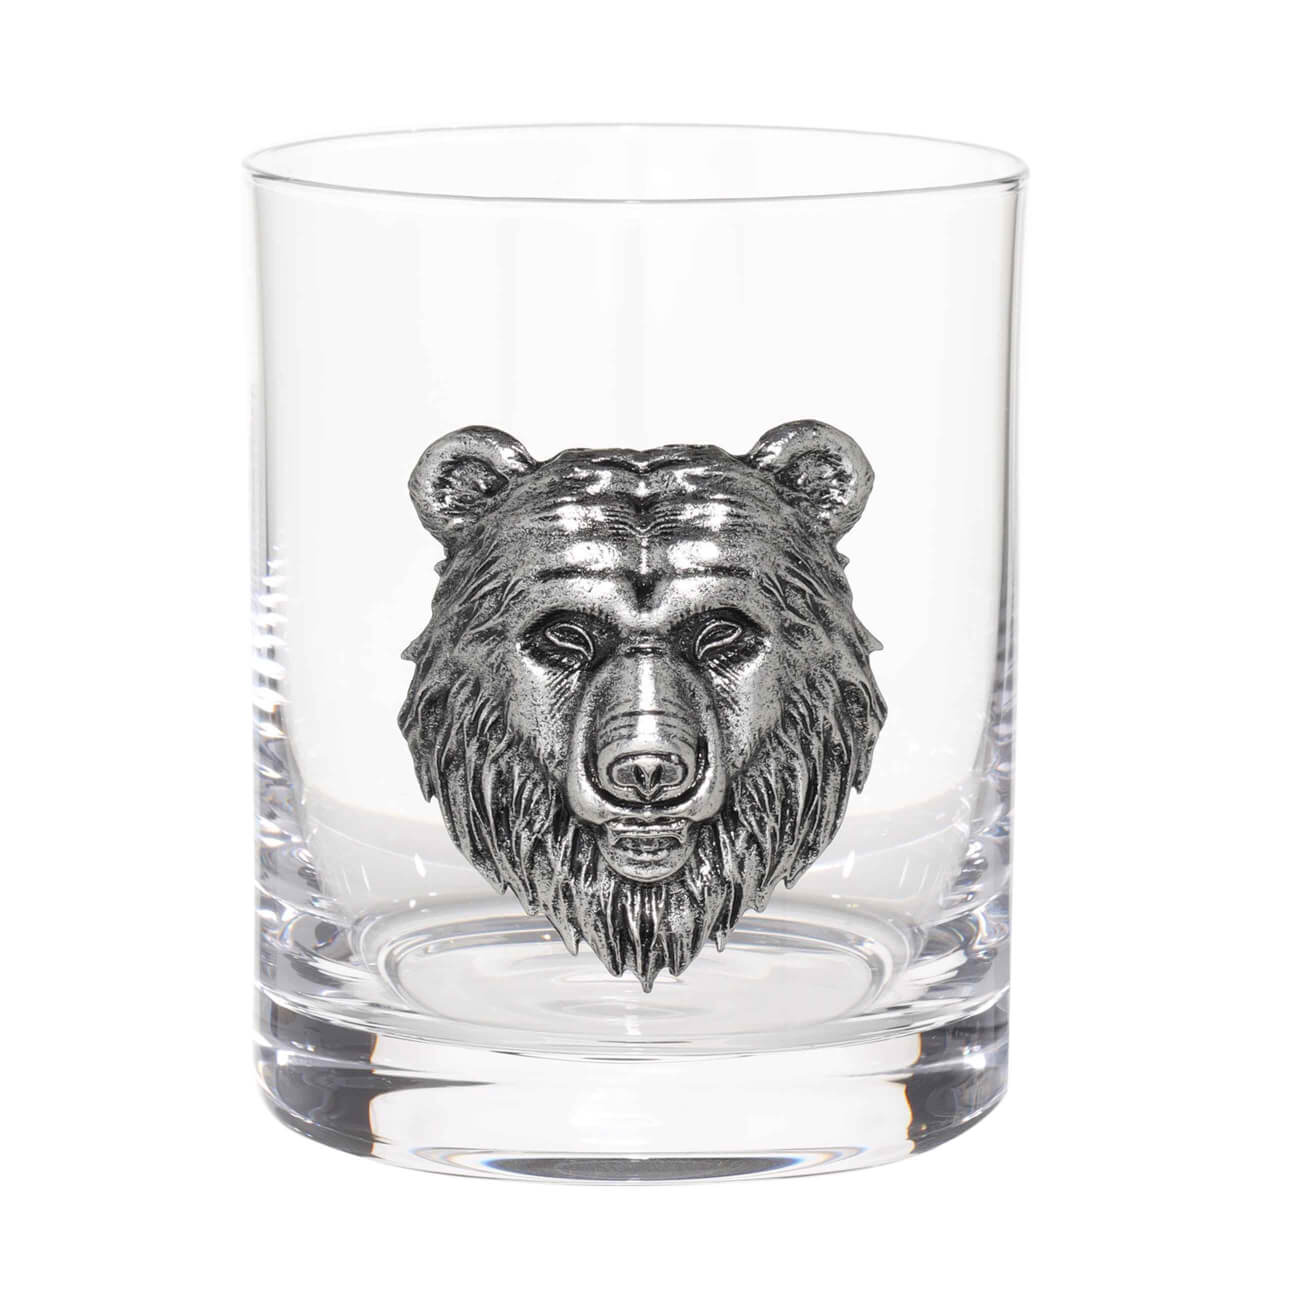 Стакан для виски, 340 мл, стекло/металл, серебристый, Медведь, Lux elements учимся считать маша и медведь